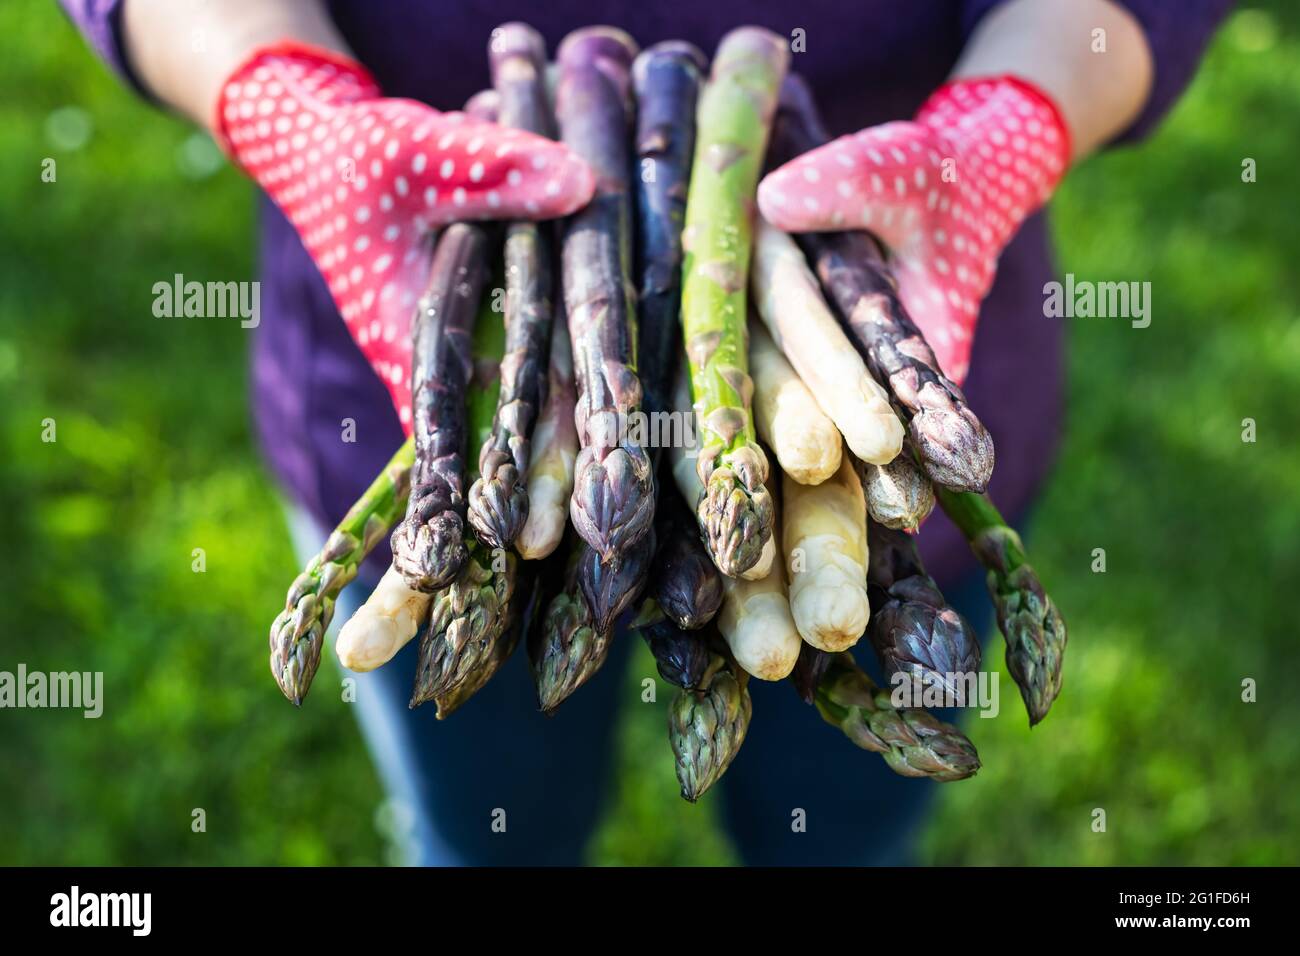 Spargel sprießt in den Händen eines Bauern auf grünem Gras Hintergrund. Frische grüne, violette und weiße Spargelsprossen. Food-Fotografie Stockfoto